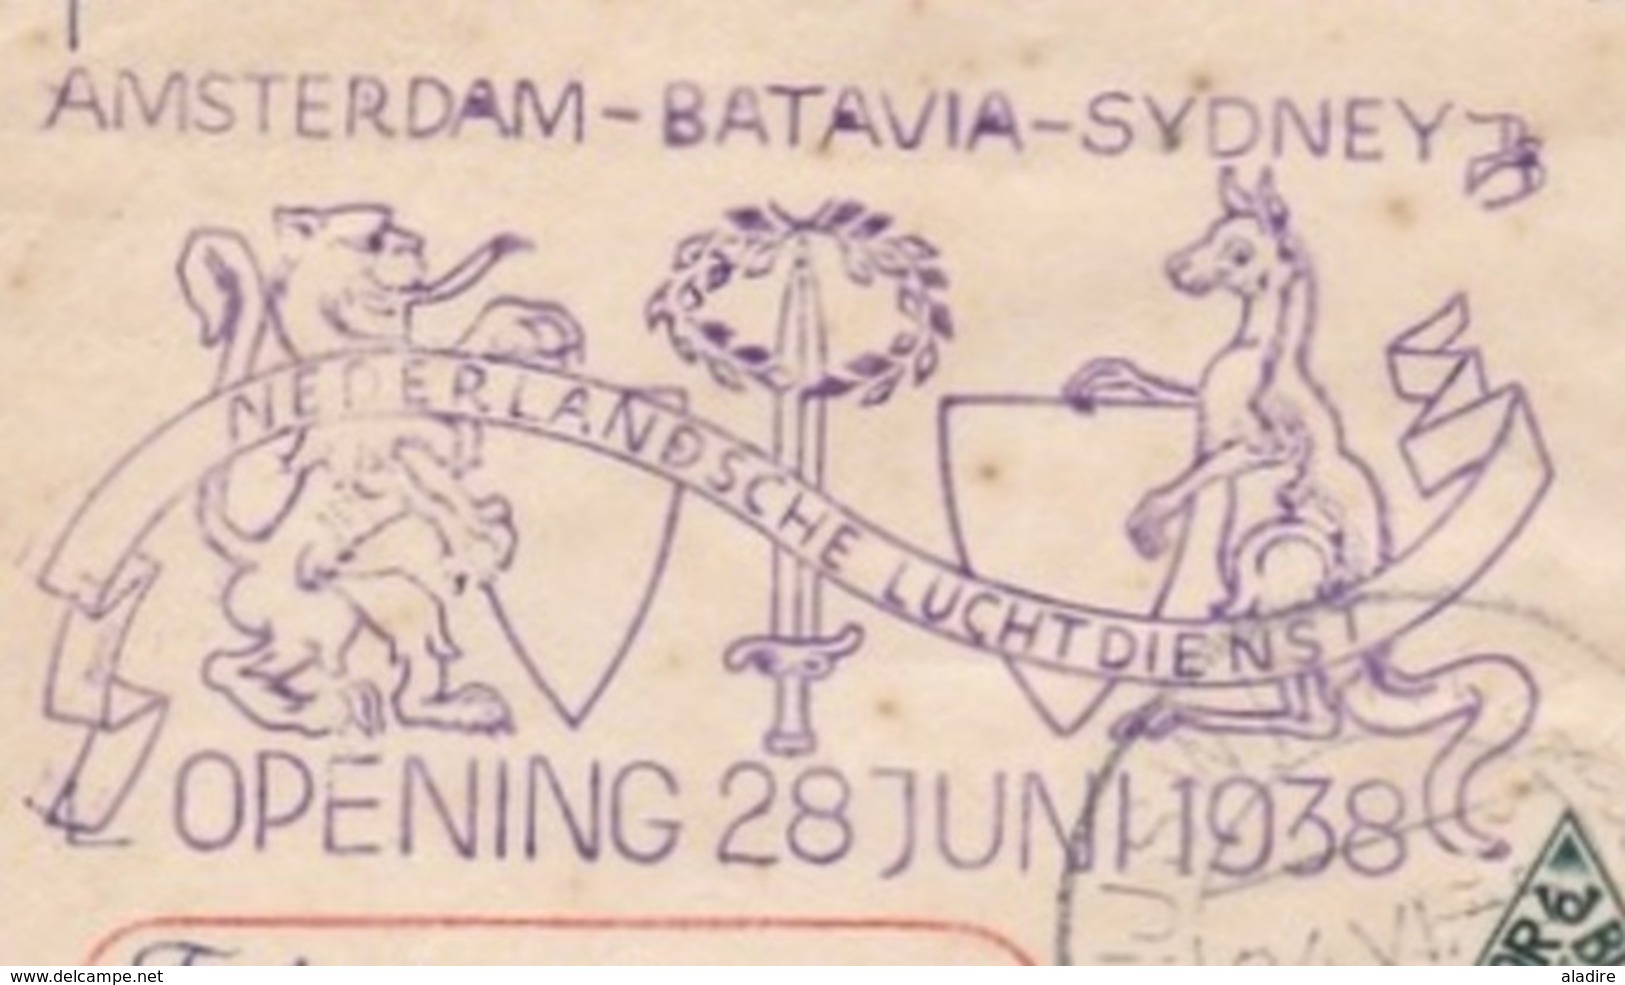 1938 - Raid Aéropostal Amsterdam, Hollande-Batavia, Djakarta, Indonésie - Sydney, Australie ET RETOUR !!! - Luftpost